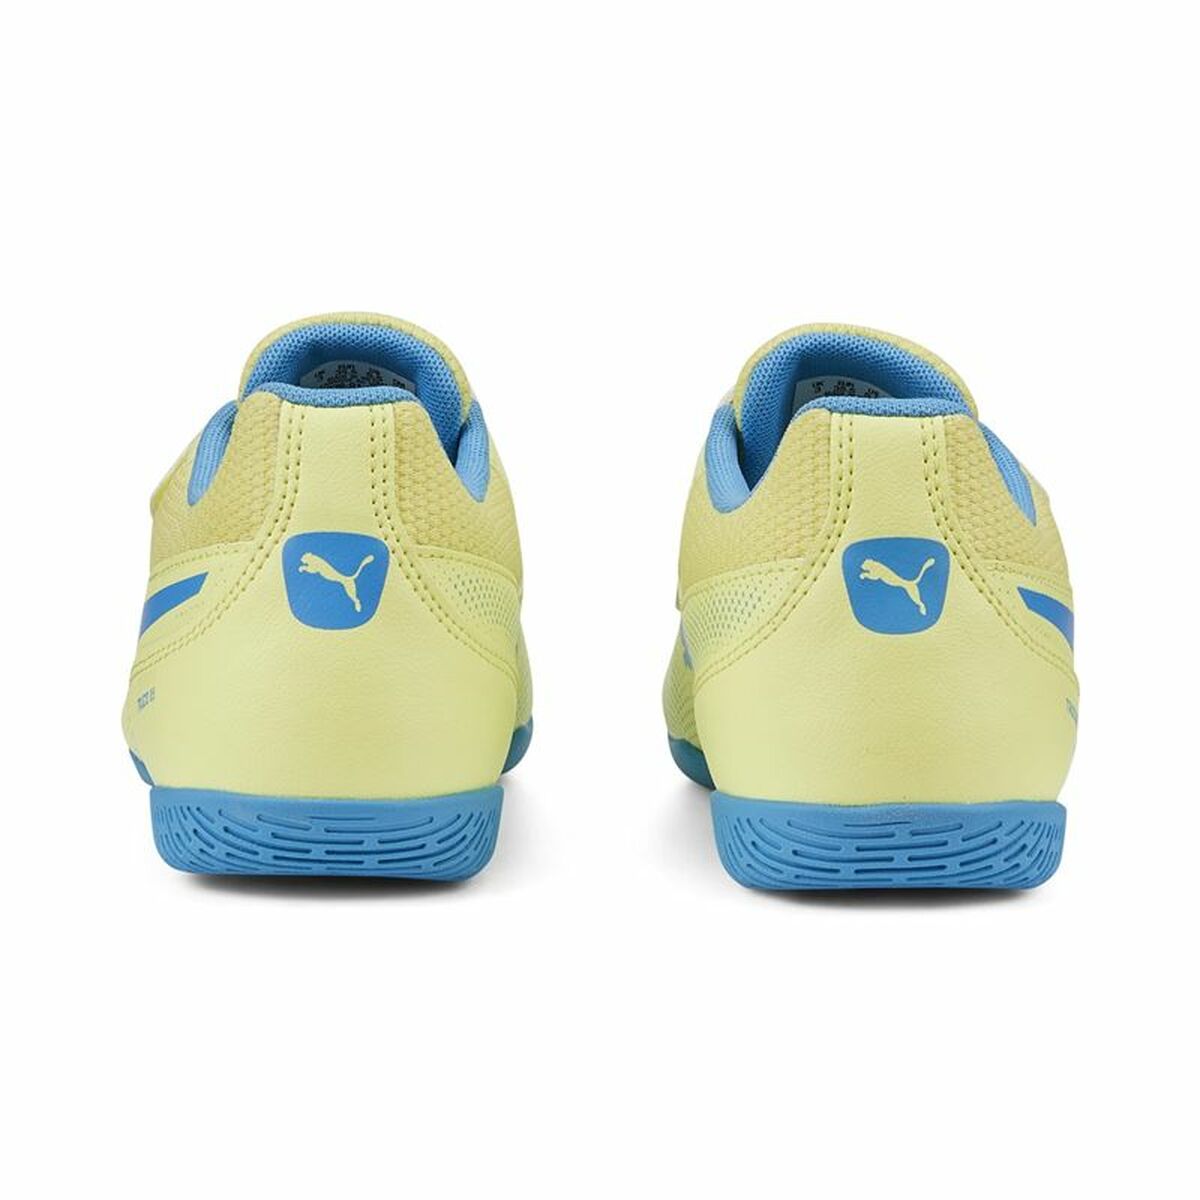 Indoor Football Shoes Puma Truco III V Yellow Boys